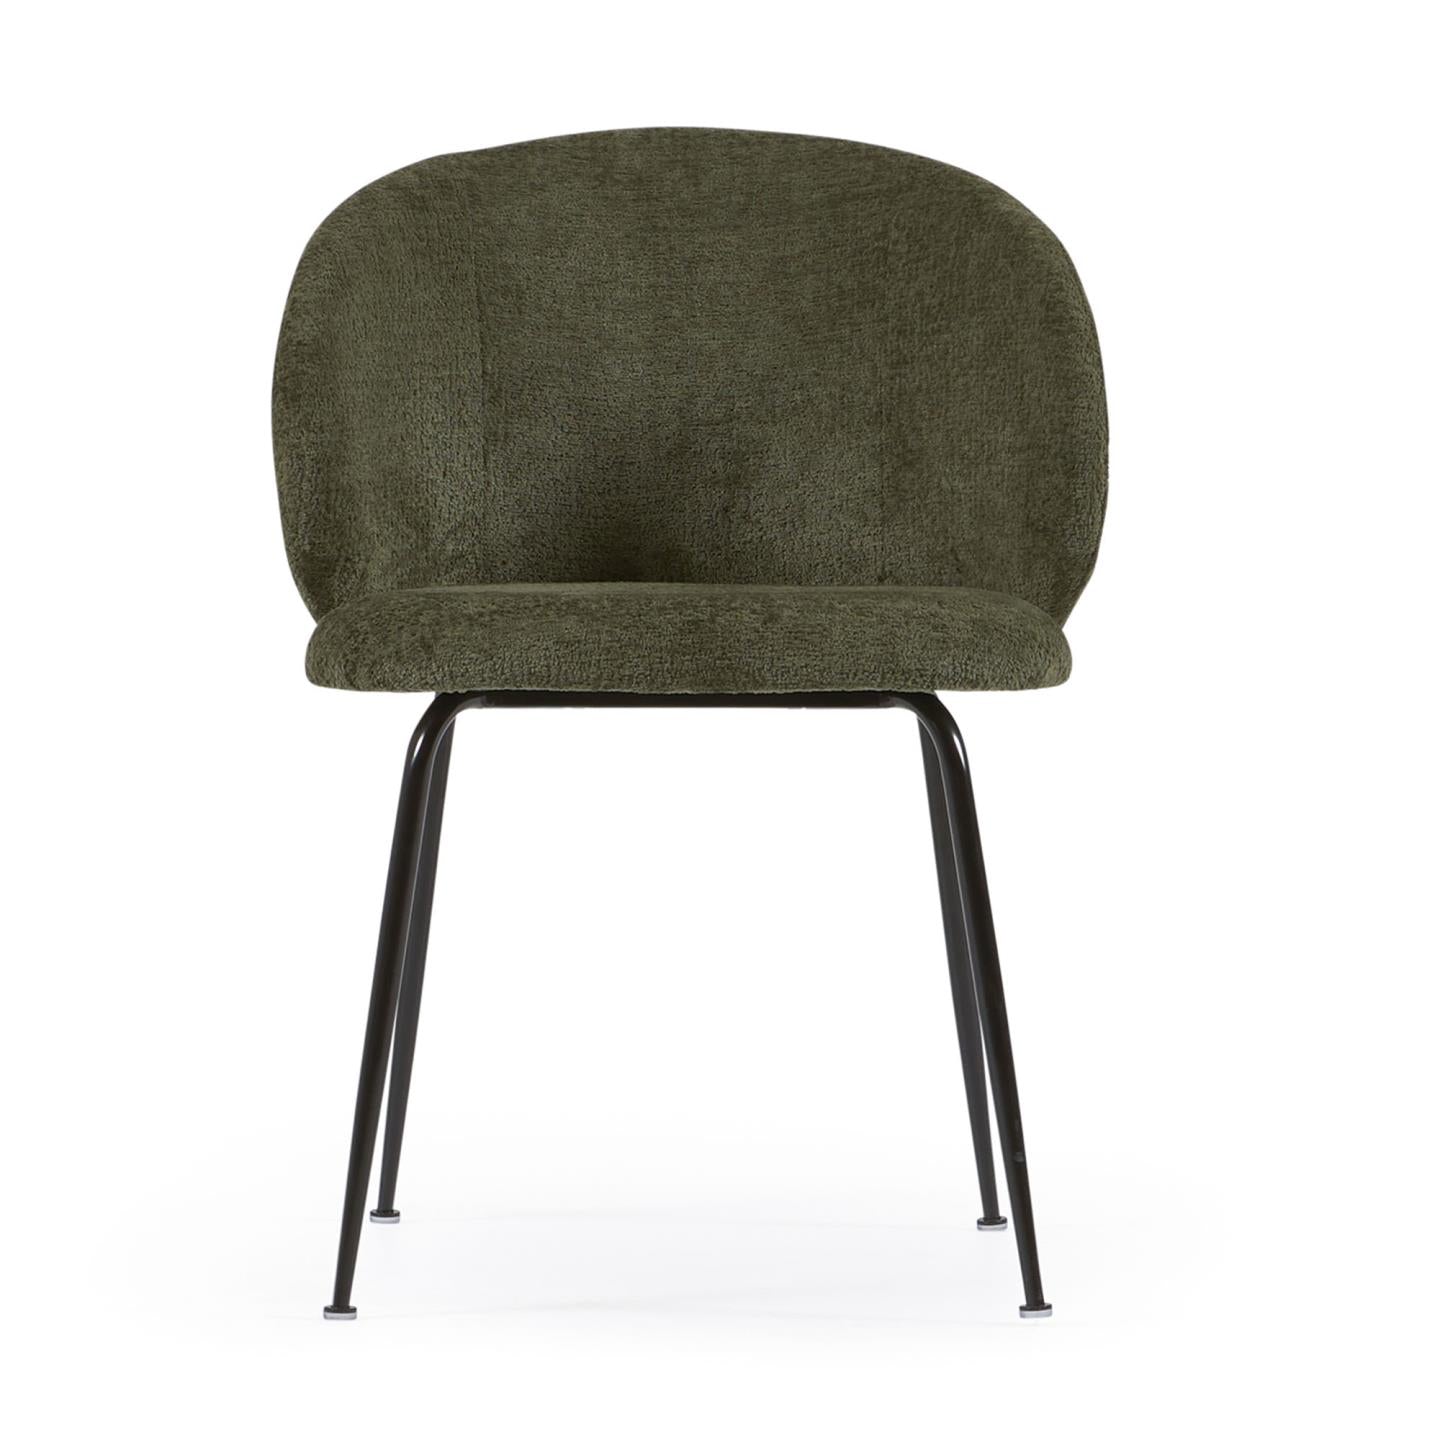 Minna zsenília szék zöld színben, fekete acéllábakkal